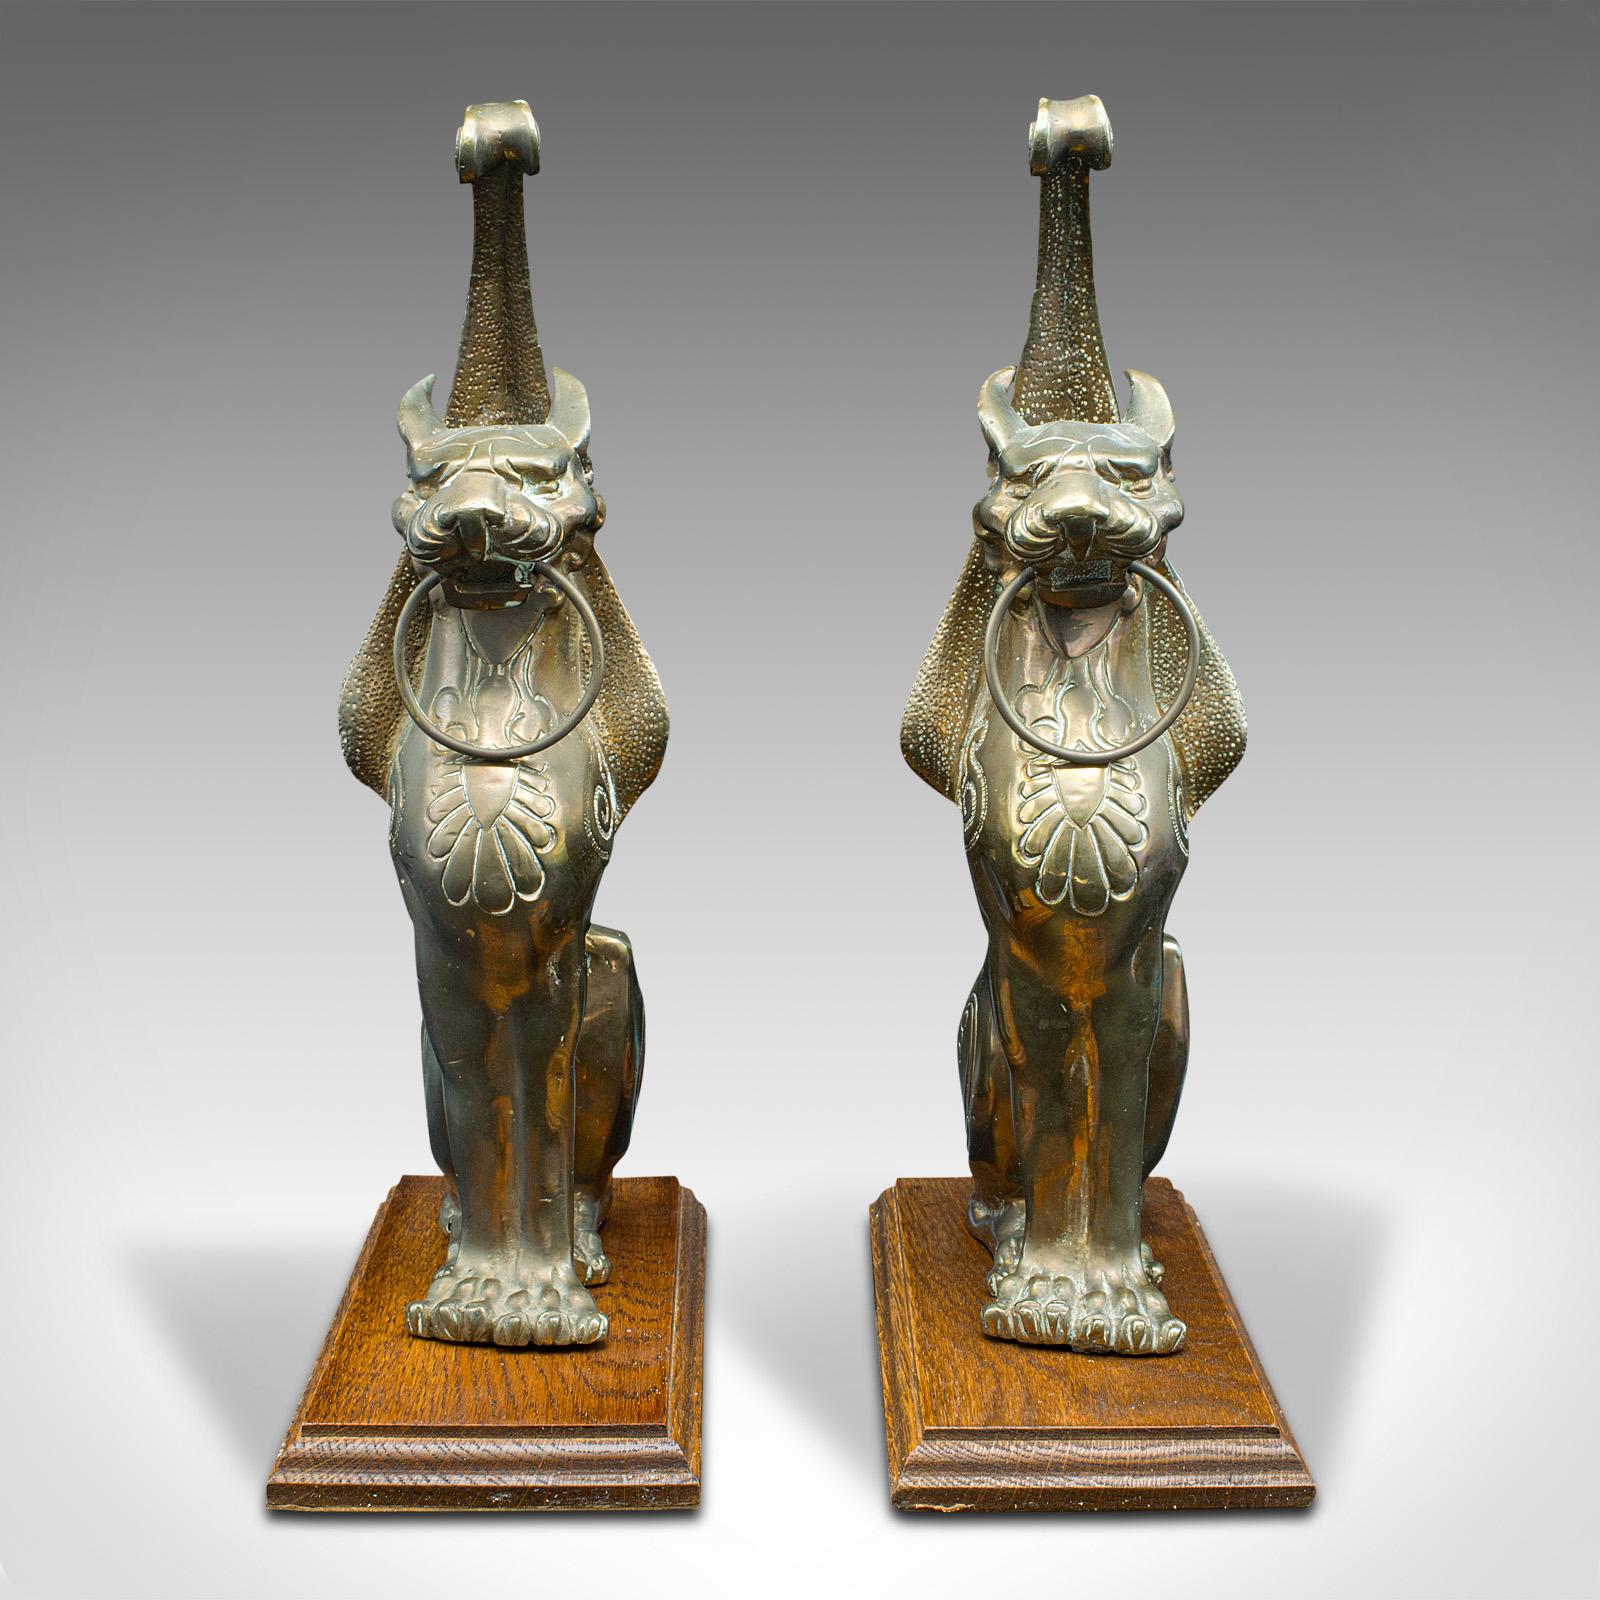 Dies ist ein Paar antiker geflügelter Katzenstatuen. Eine italienische Dekorationsfigur aus Bronze auf Eichenholz im Grand-Tour-Stil aus der frühen viktorianischen Periode, um 1850.

Auffällige Katzenornamente mit mythologischen Flügeln
Mit